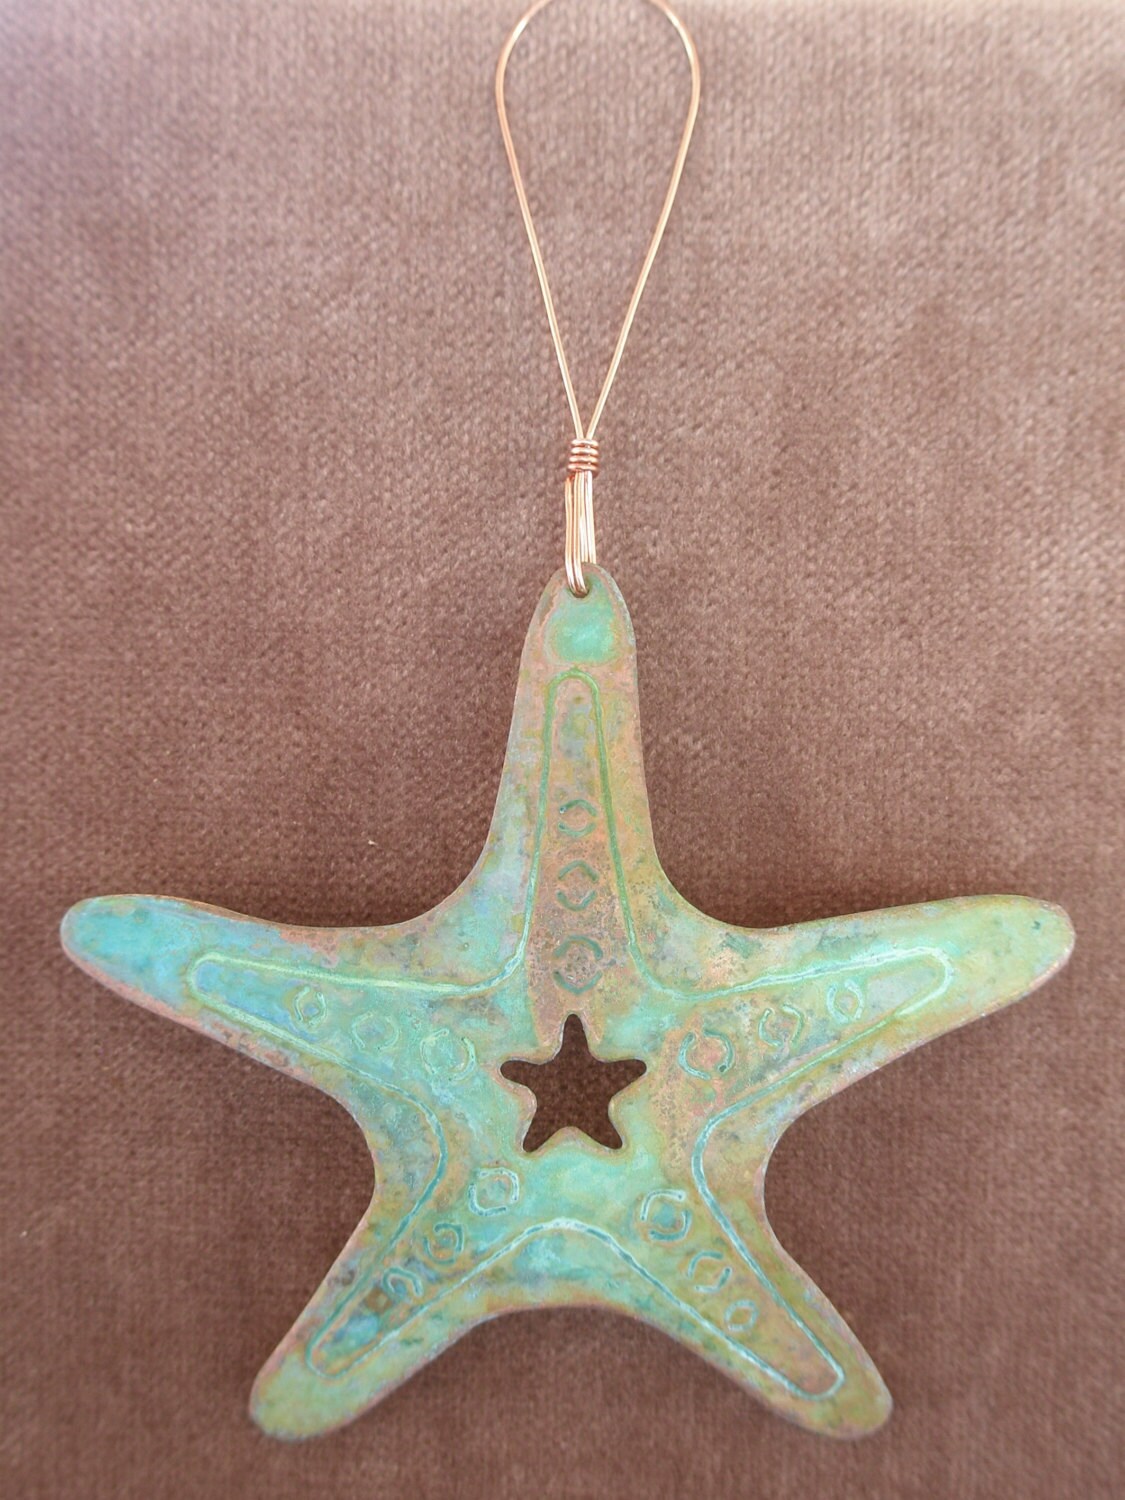 STARFISH Copper Verdigris Ornament - Handcrafted in The Copper State (Arizona USA)